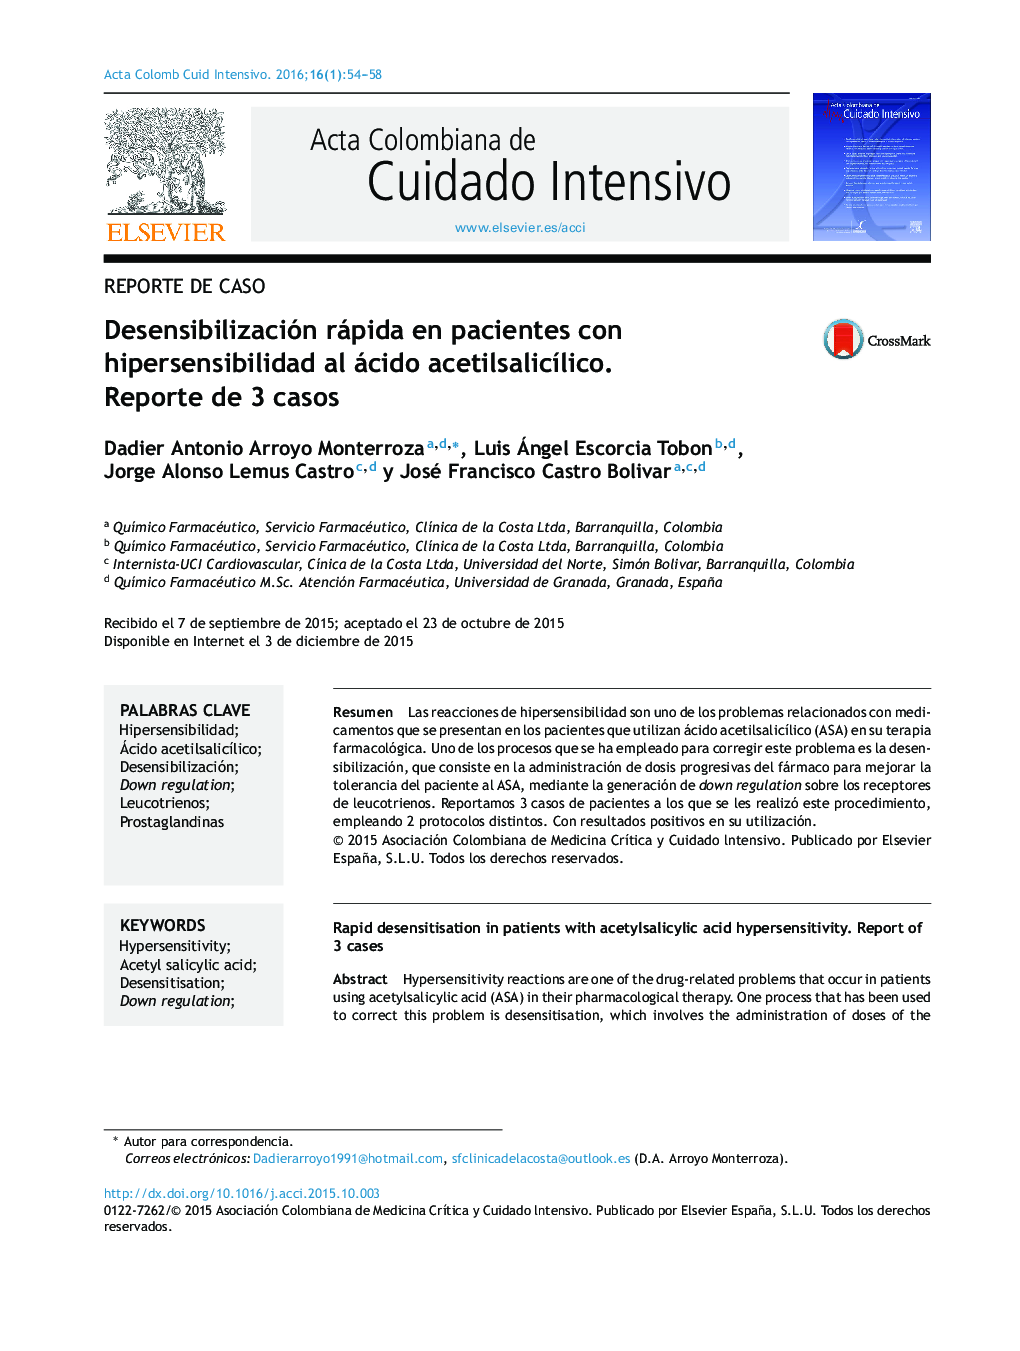 Desensibilización rápida en pacientes con hipersensibilidad al ácido acetilsalicÃ­lico. Reporte de 3 casos